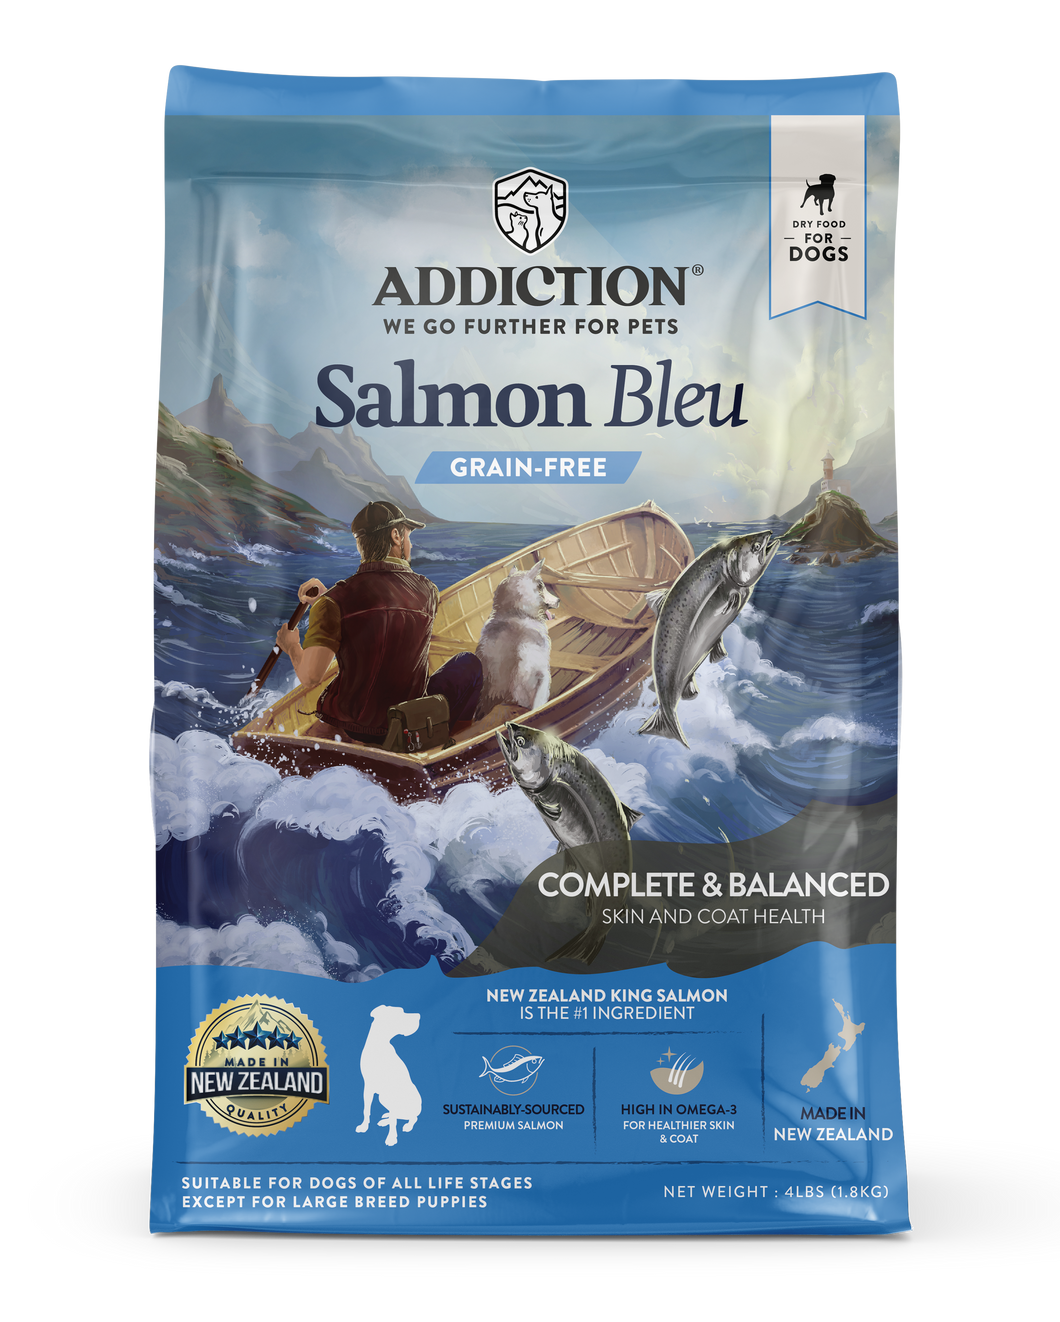 Addiction Salmon Bleu Dog - New Zealand King Salmon Dry Dog Food, All Life Stage